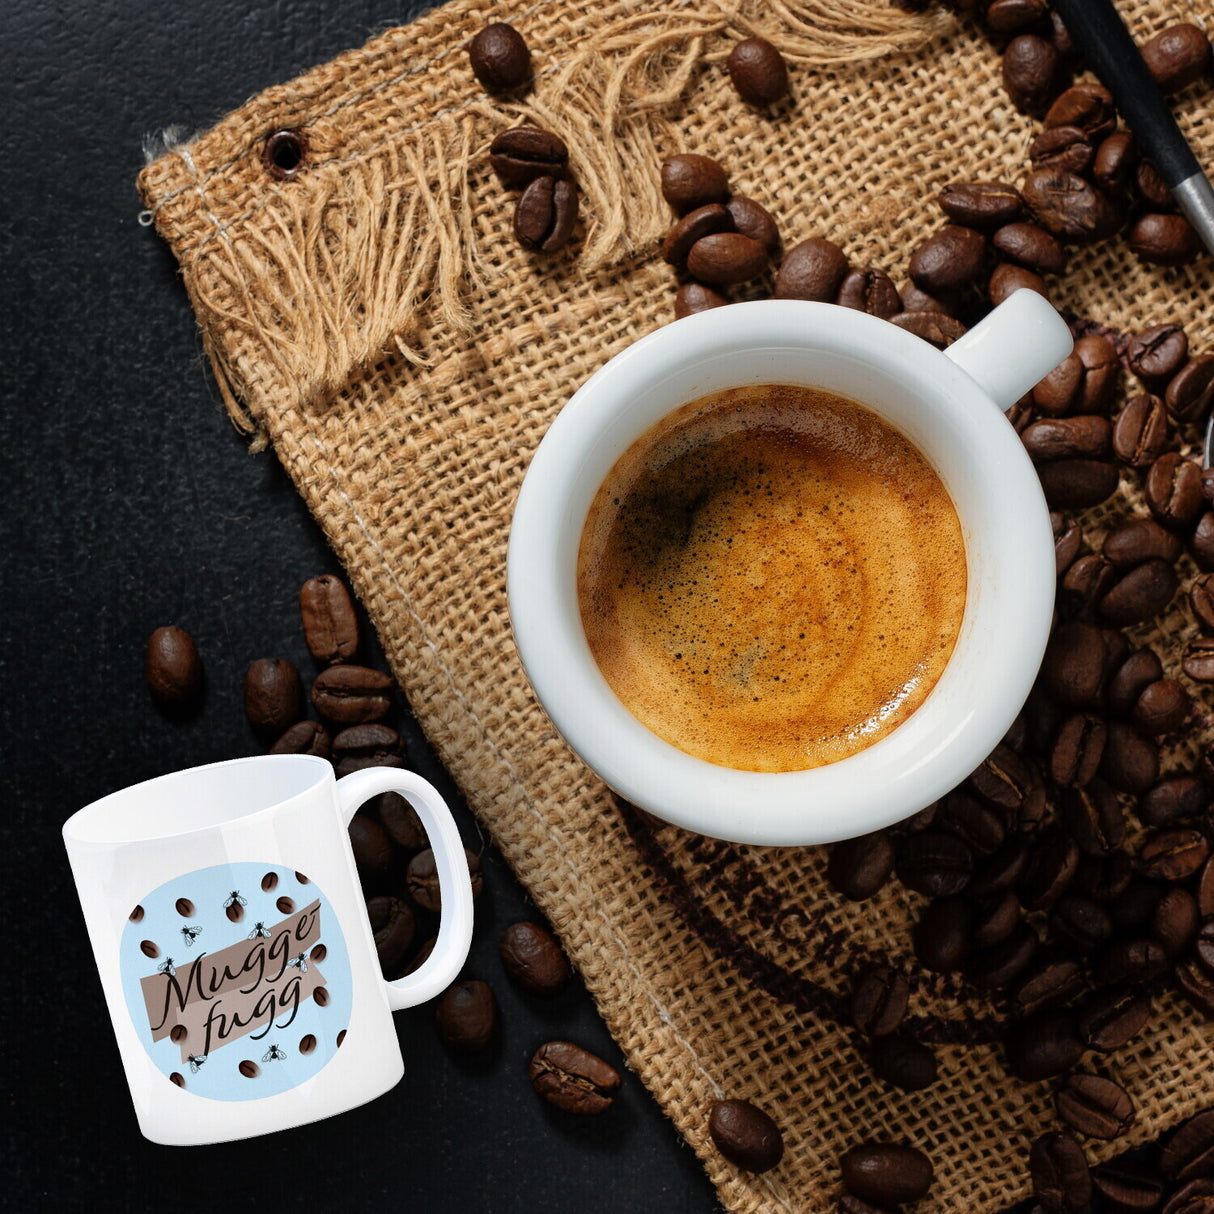 Muggefugg Malzkaffee Kaffeebecher mit Kaffeebohnen und Fliegen blau